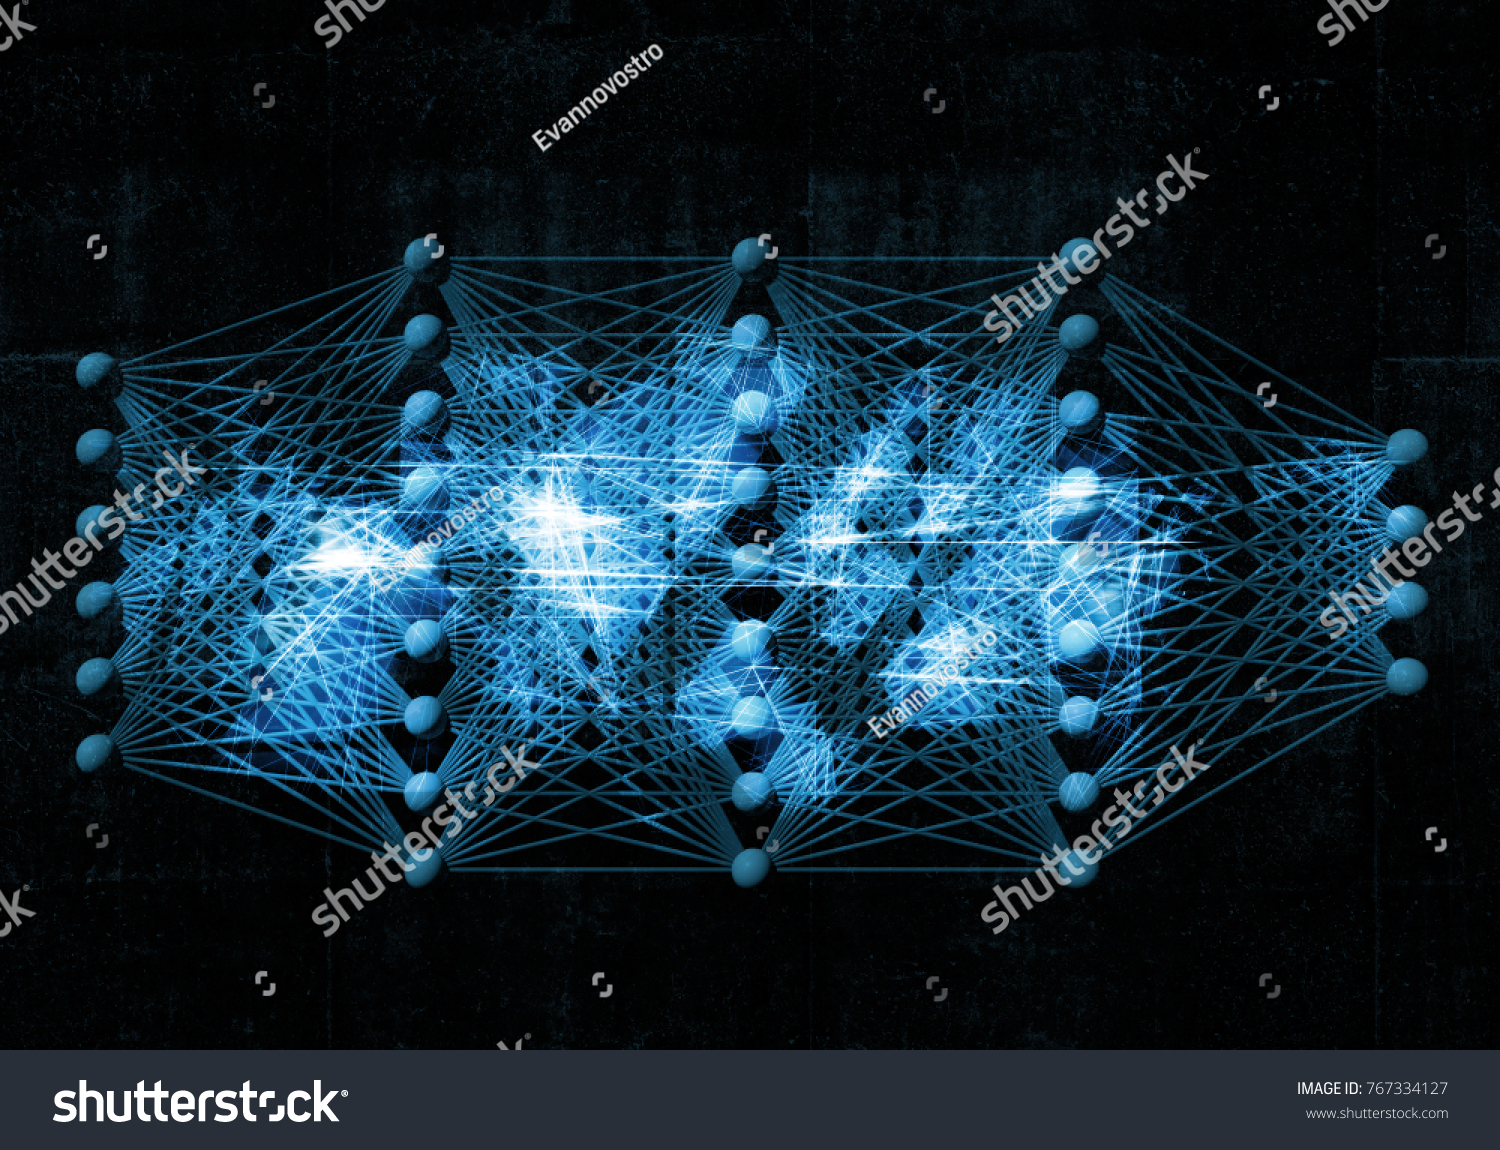 Бесплатные нейросети на русском языке андроида. Нейронная сеть. Нейронная сеть 3d. Искусственная нейронная сеть. Компьютерные нейросети.